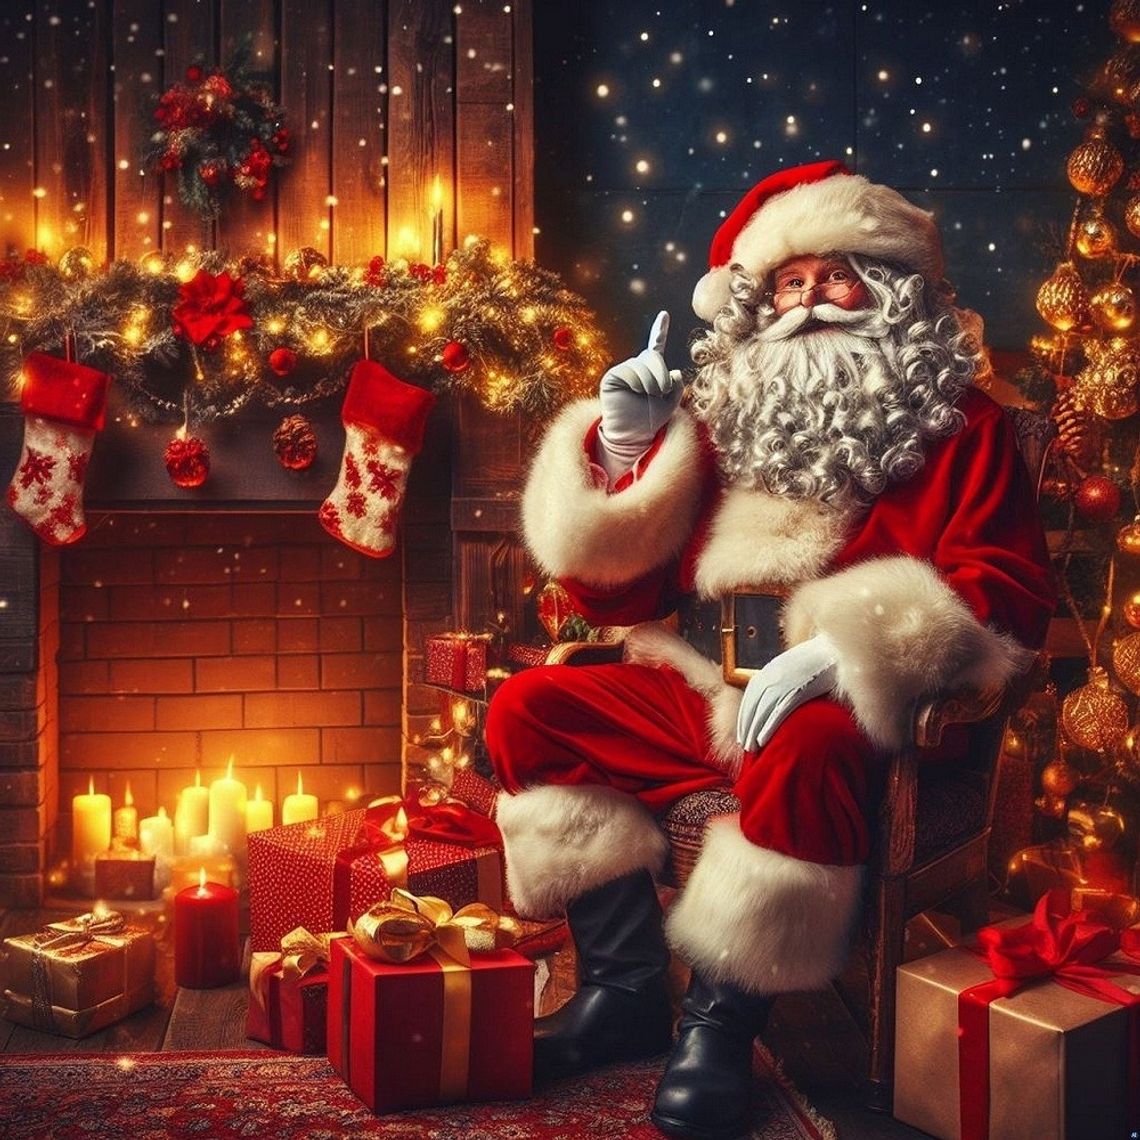 Mikołaj czeka na listy! Najładniejsze prace zostaną nagrodzone